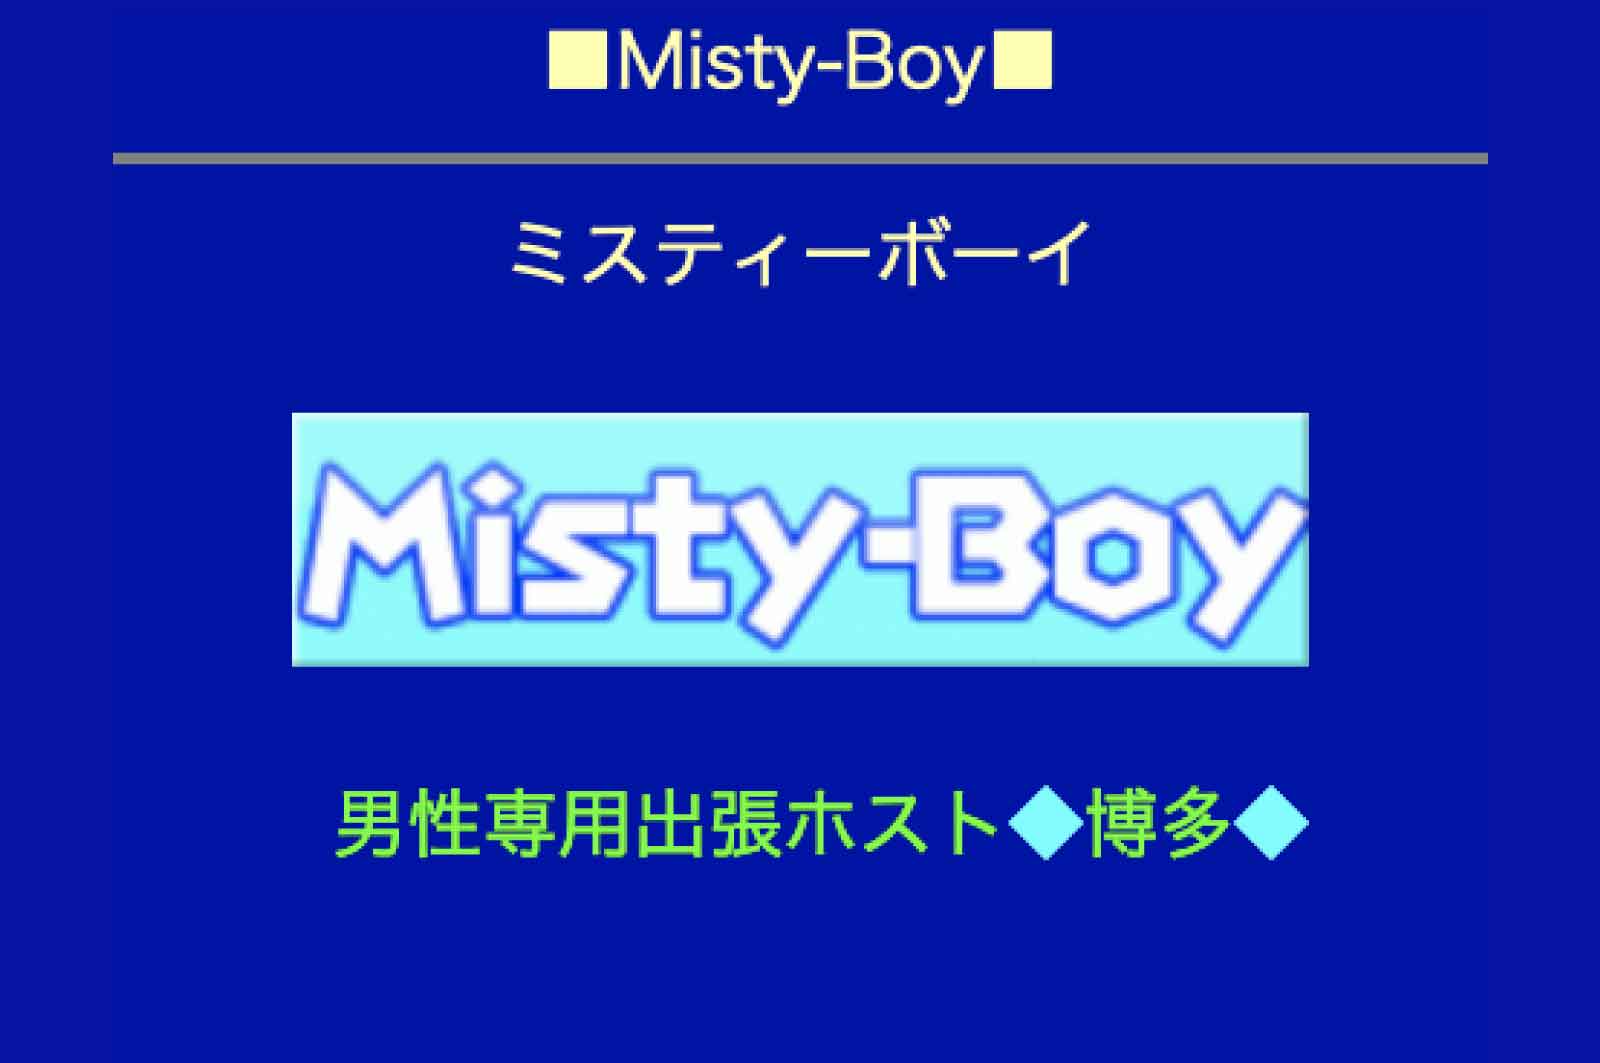 Misty-Boy